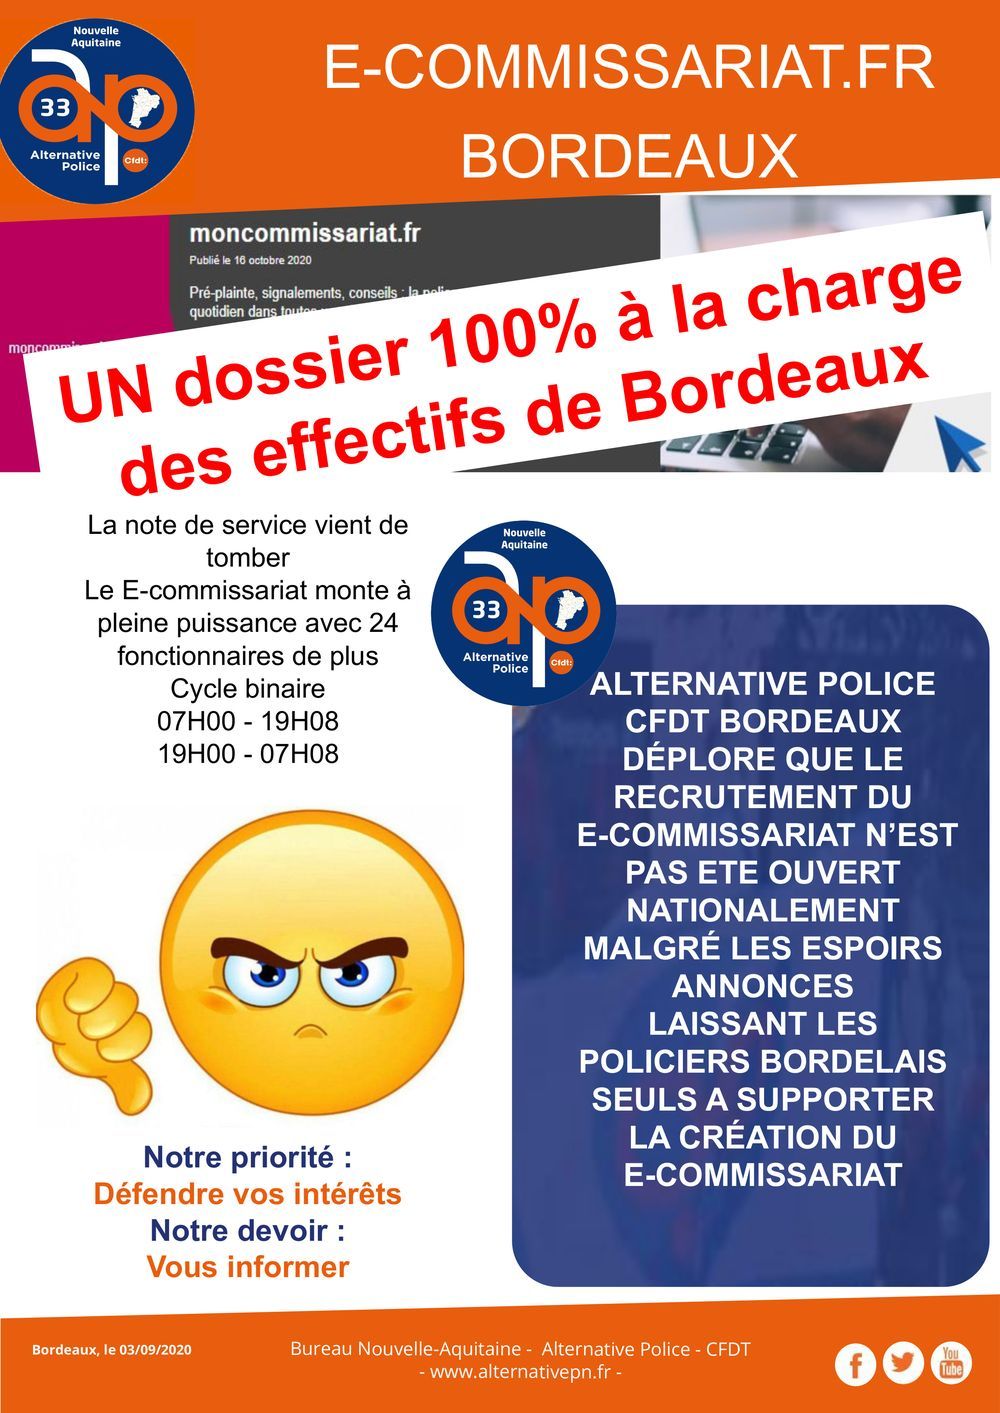 E-commissariat à Bordeaux : un dossier 100% à la charge des effectifs !